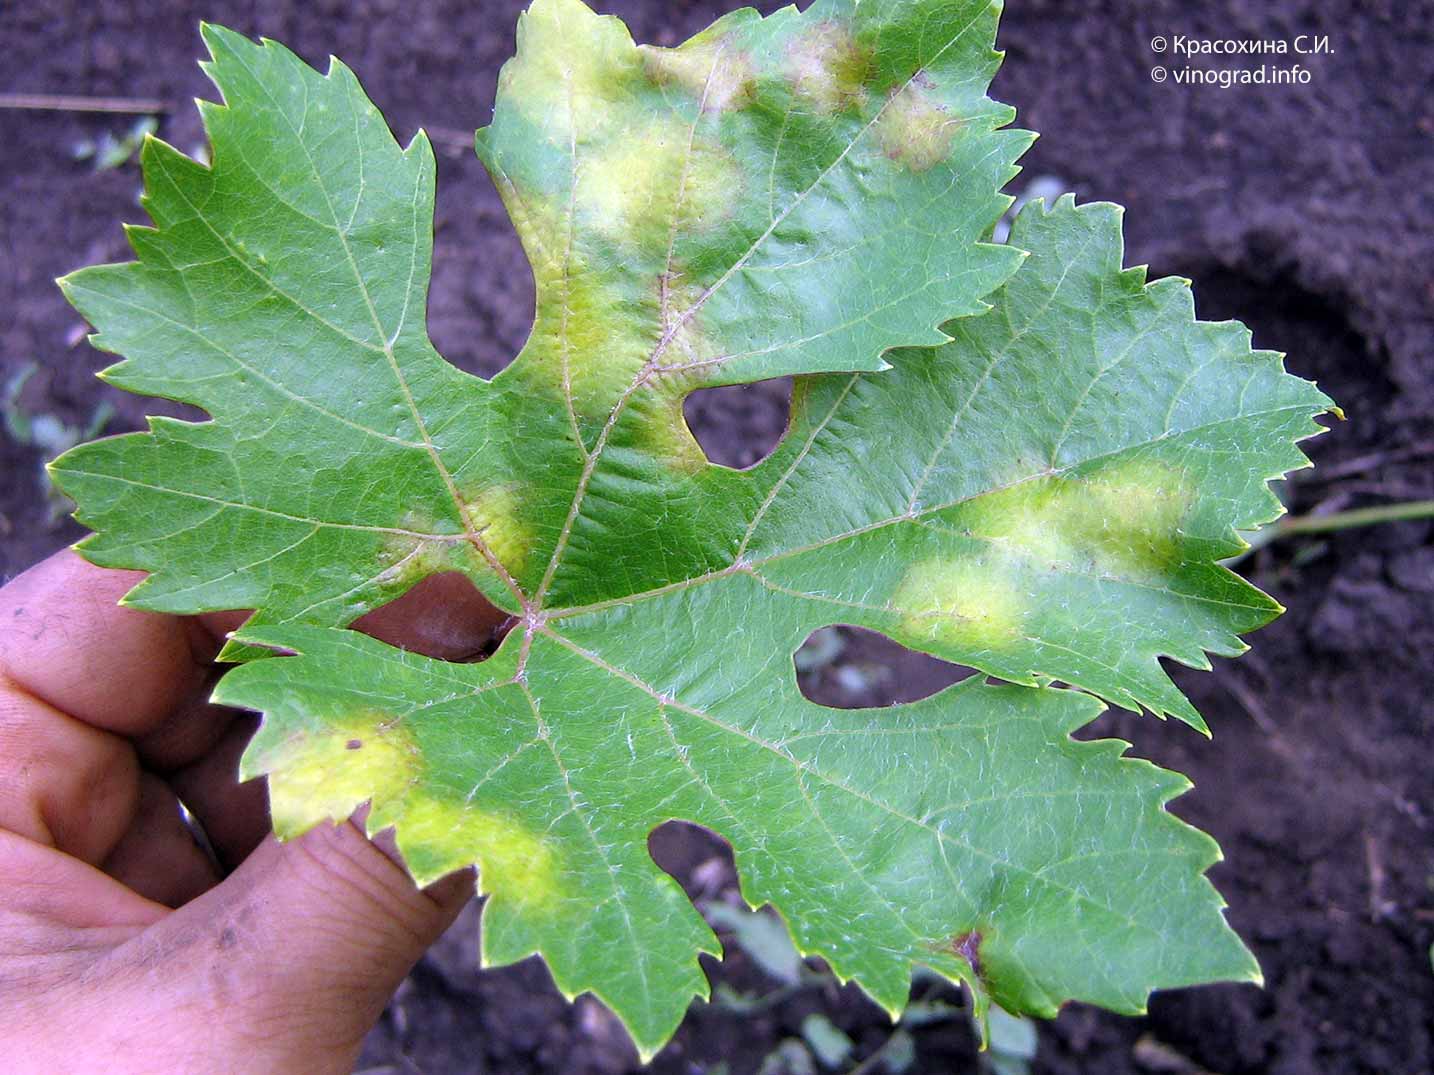 Заболевание милдью (mildew), либо ложная мучнистая роса винограда, считается наиболее распространенным и опасным для европейских сортов культуры